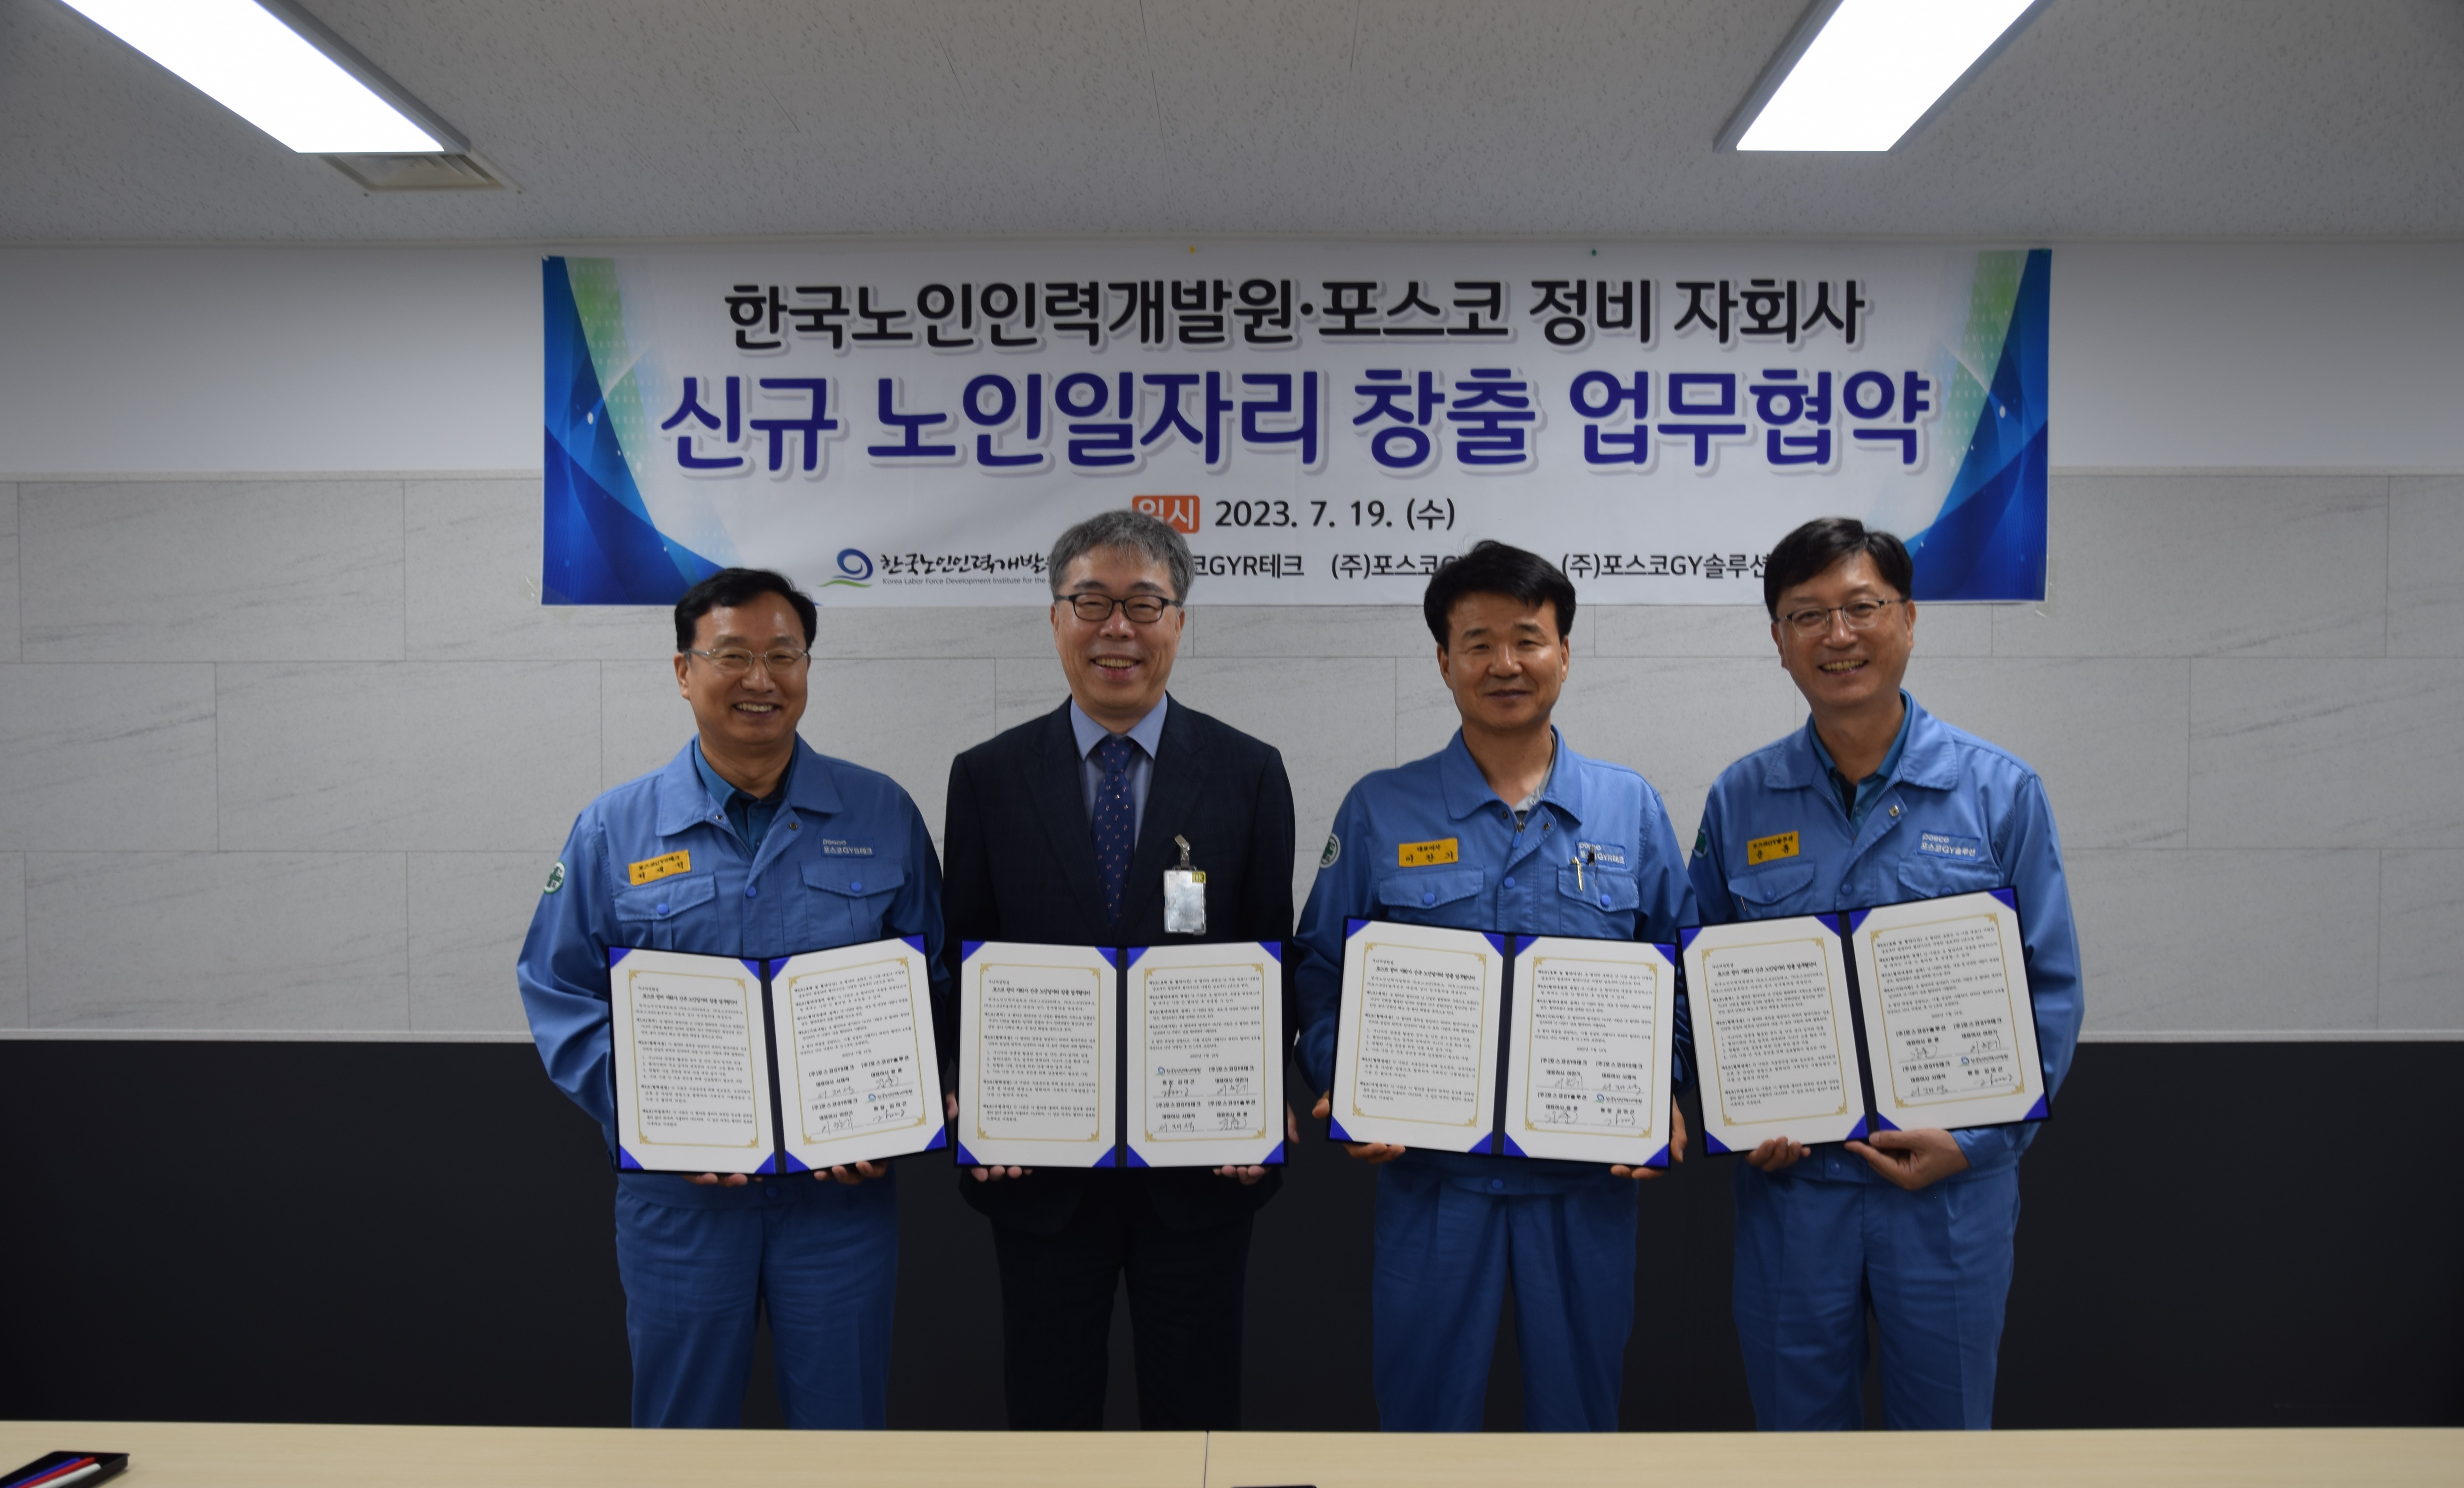 한국노인인력개발원은 광양 포스코 정비 자회사 3사와 철강 산업 분야 노인일자리 창출을 위한 업무협약을 체결을 한 후 단체사진